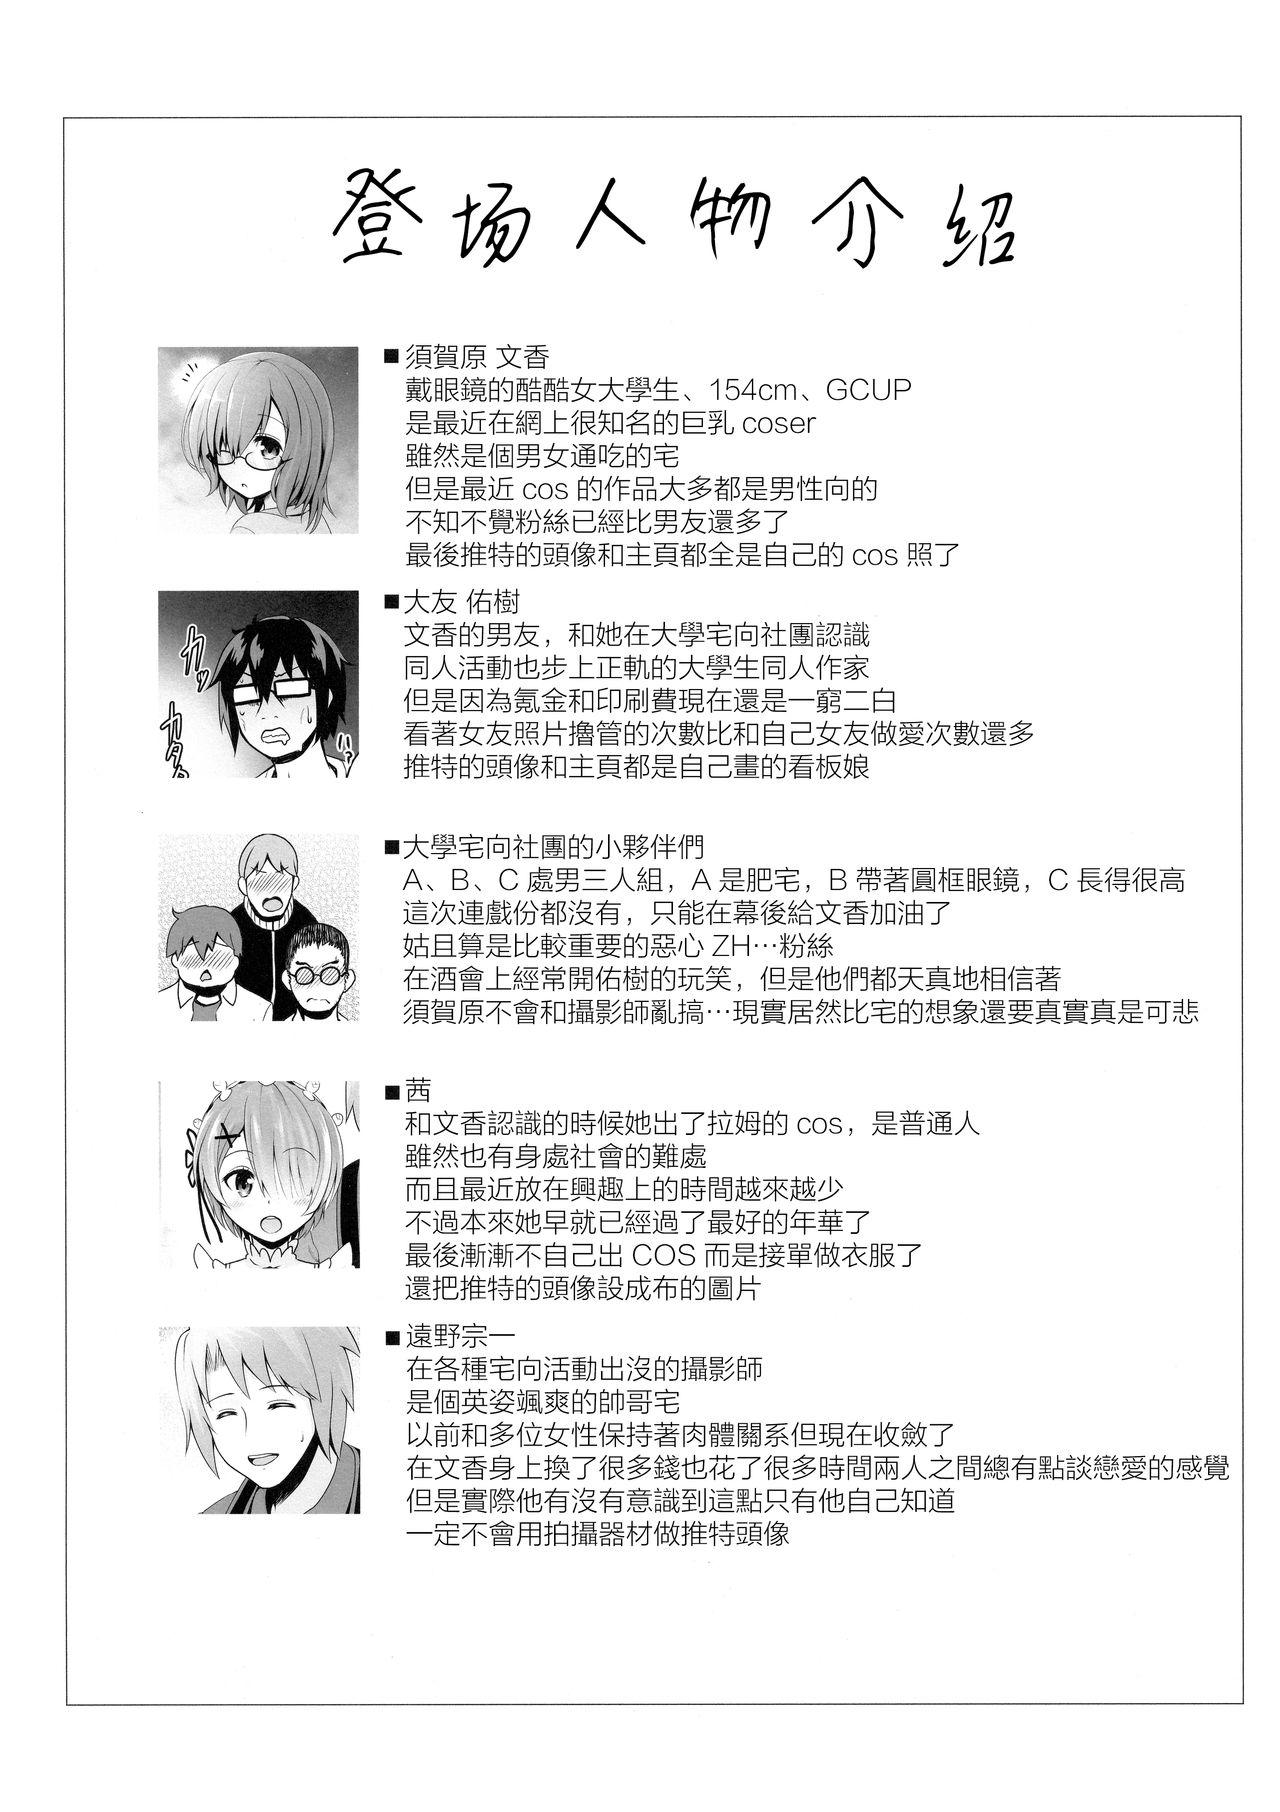 Strange Tennen Kamichichi Shirouto Cosplayer Nangoku Ritou Mizugi Loca Satsuei - Kantai collection Fate grand order Porra - Page 3